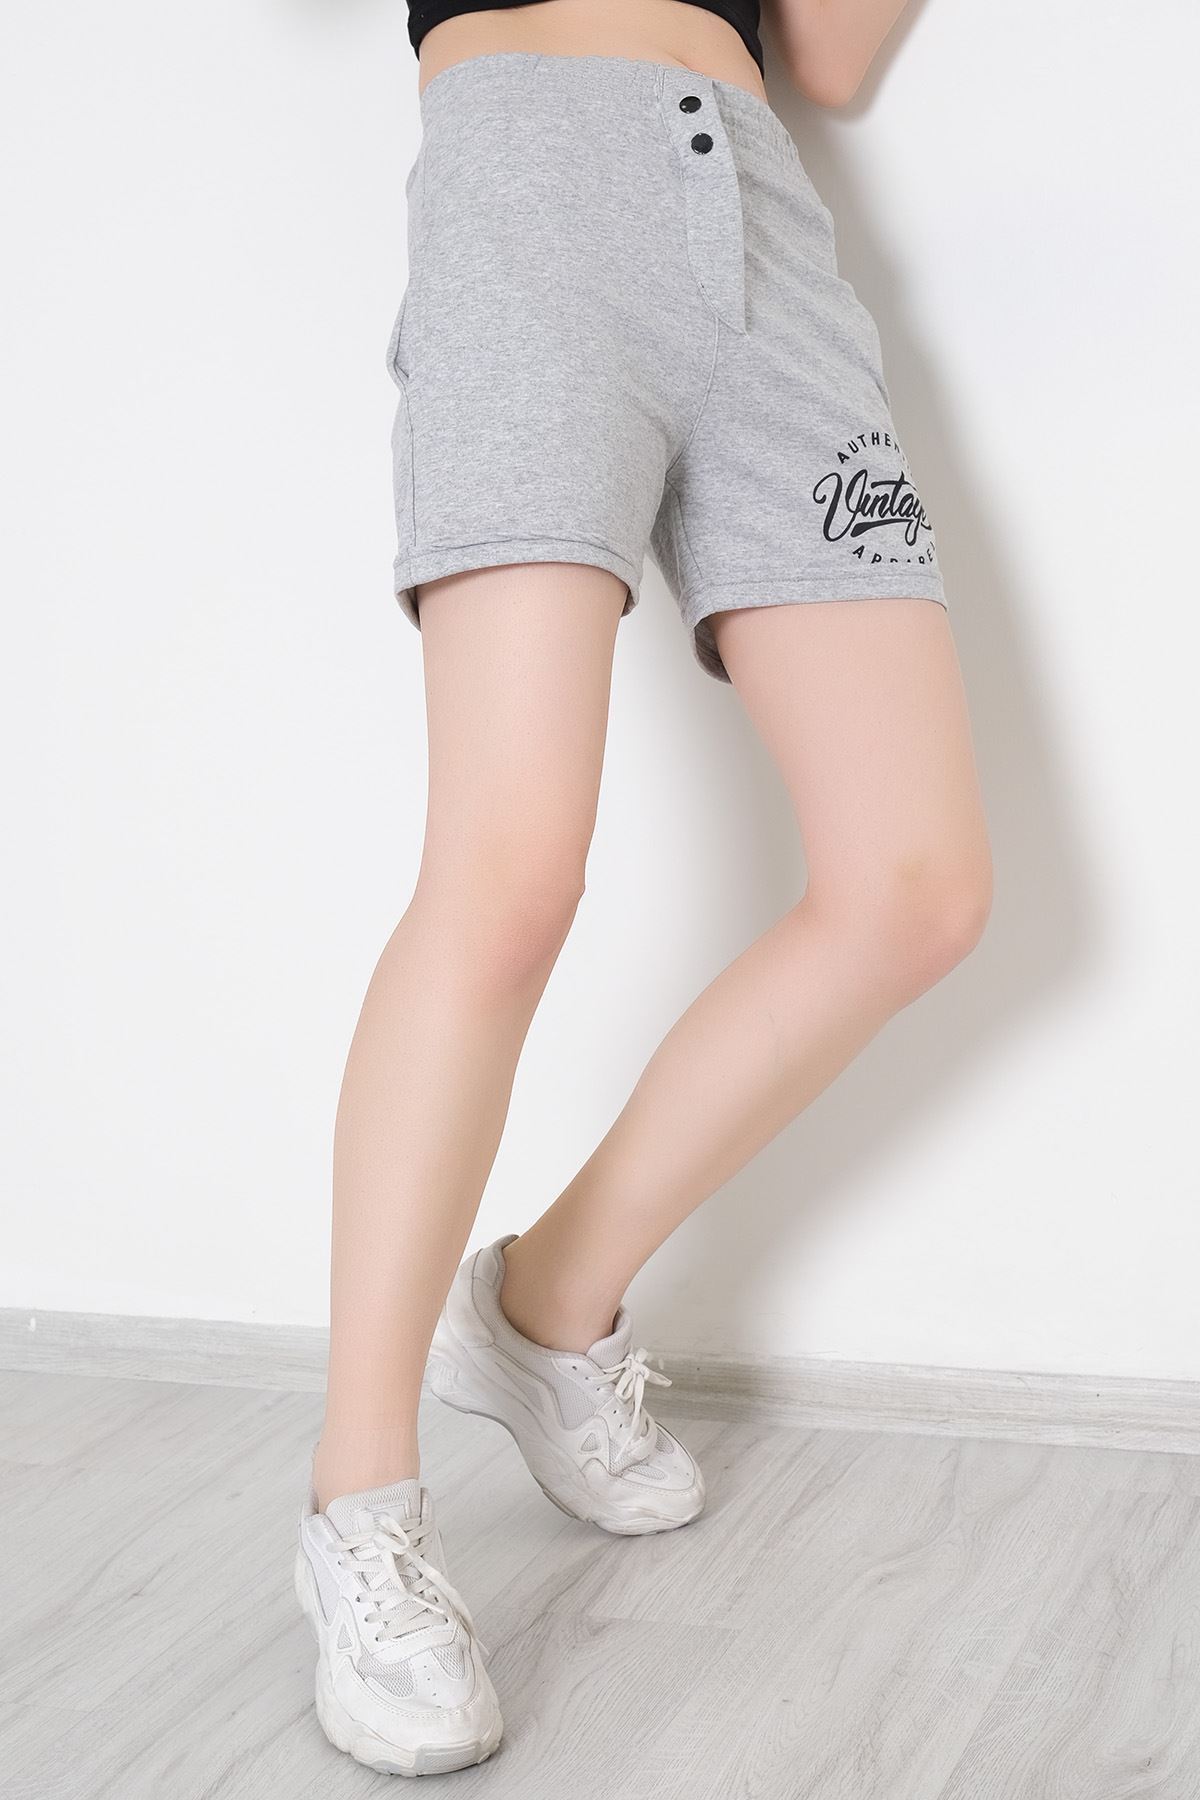 A model wears HAV11708 - Front Printed Snap Snap Shorts Gray - 330183.1608., wholesale Shorts of Helin Avşar to display at Lonca